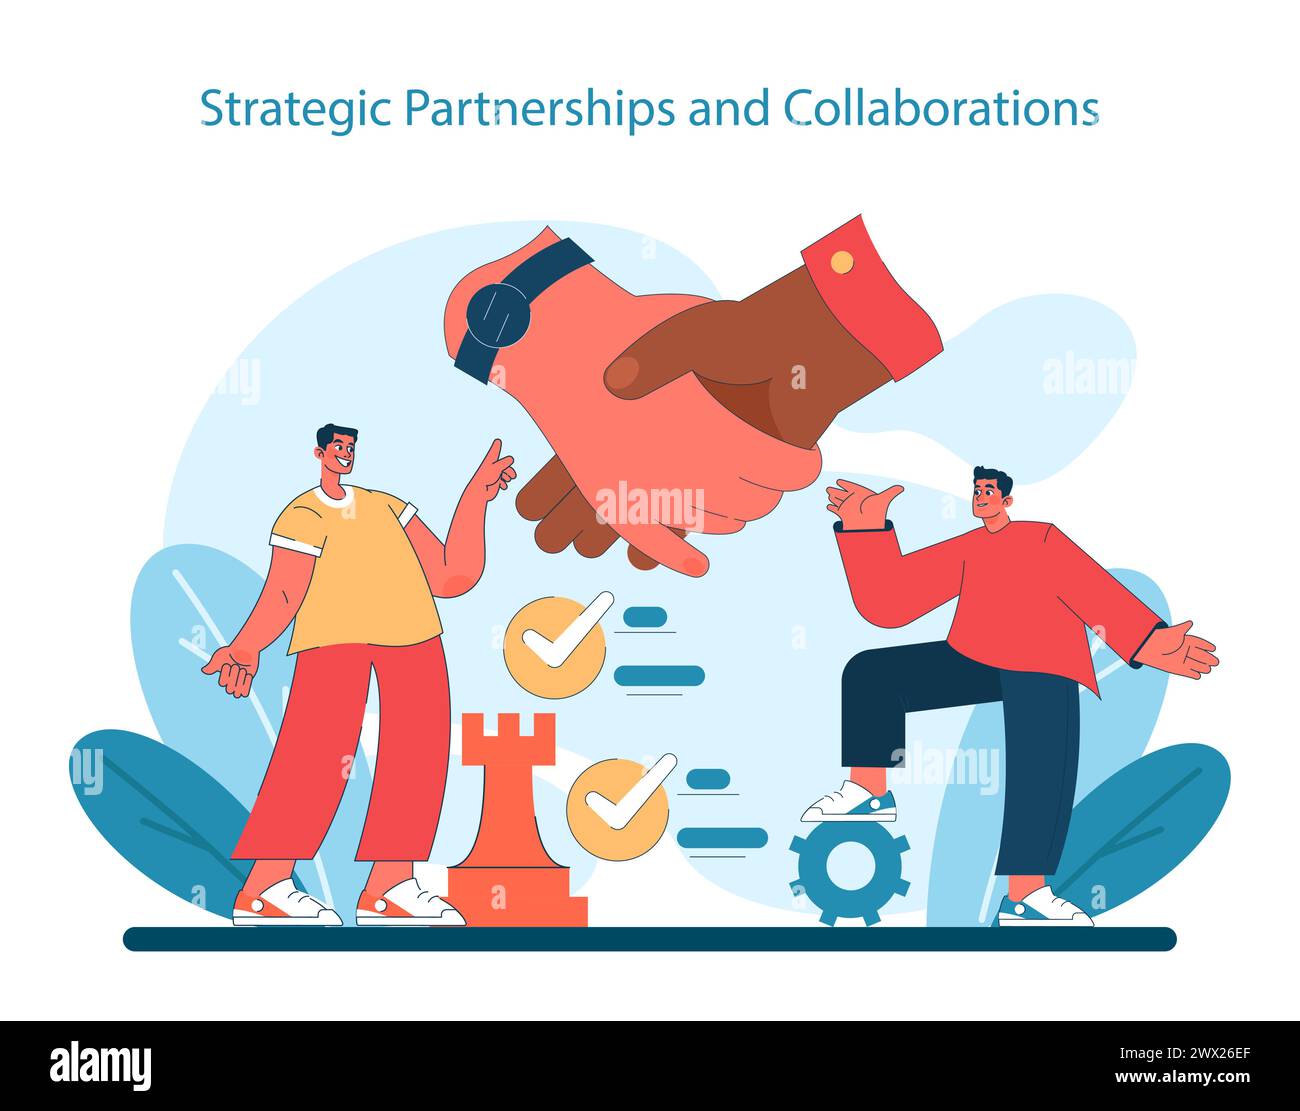 Concetto di partnership strategiche e collaborazioni. Costruire solide alleanze e sinergie nel business. Scacchi come metafora per la pianificazione tattica. Illustrazione vettoriale. Illustrazione Vettoriale